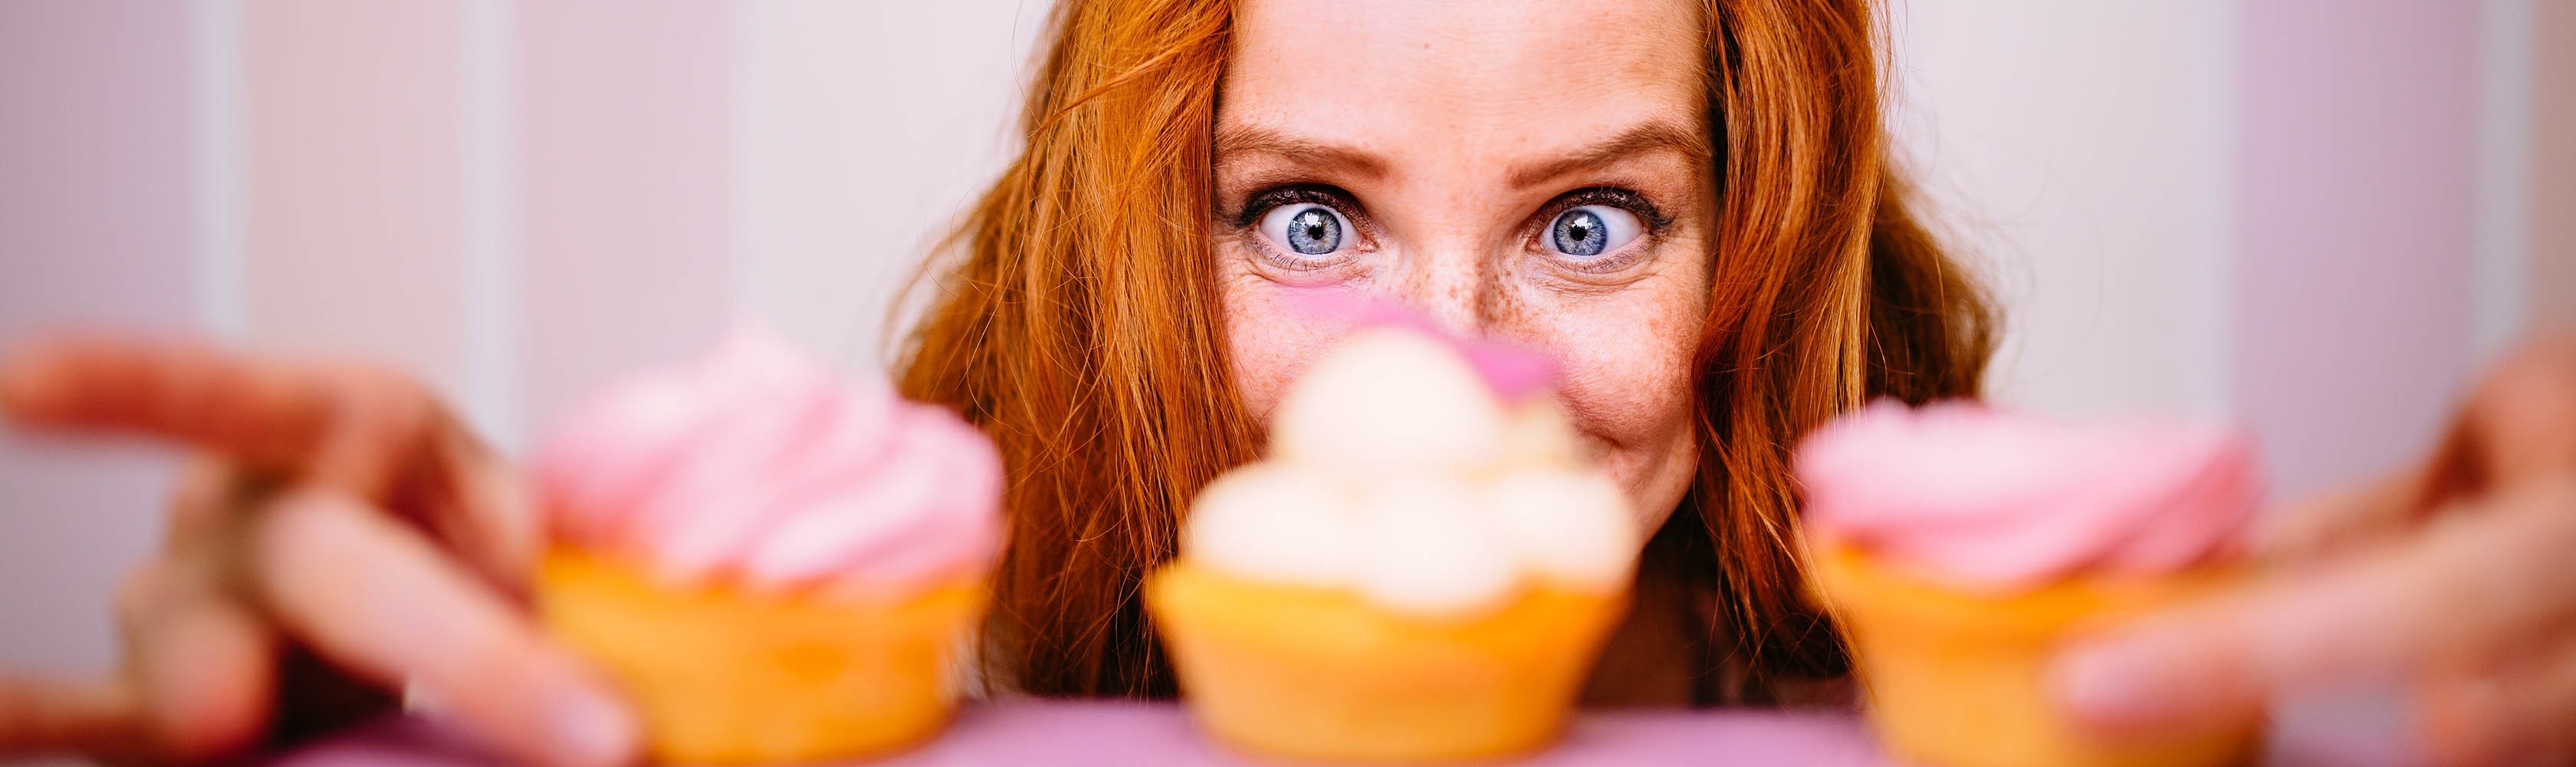 Una donna ha tre cupcake davanti a sé e cerca di resistere al desiderio.